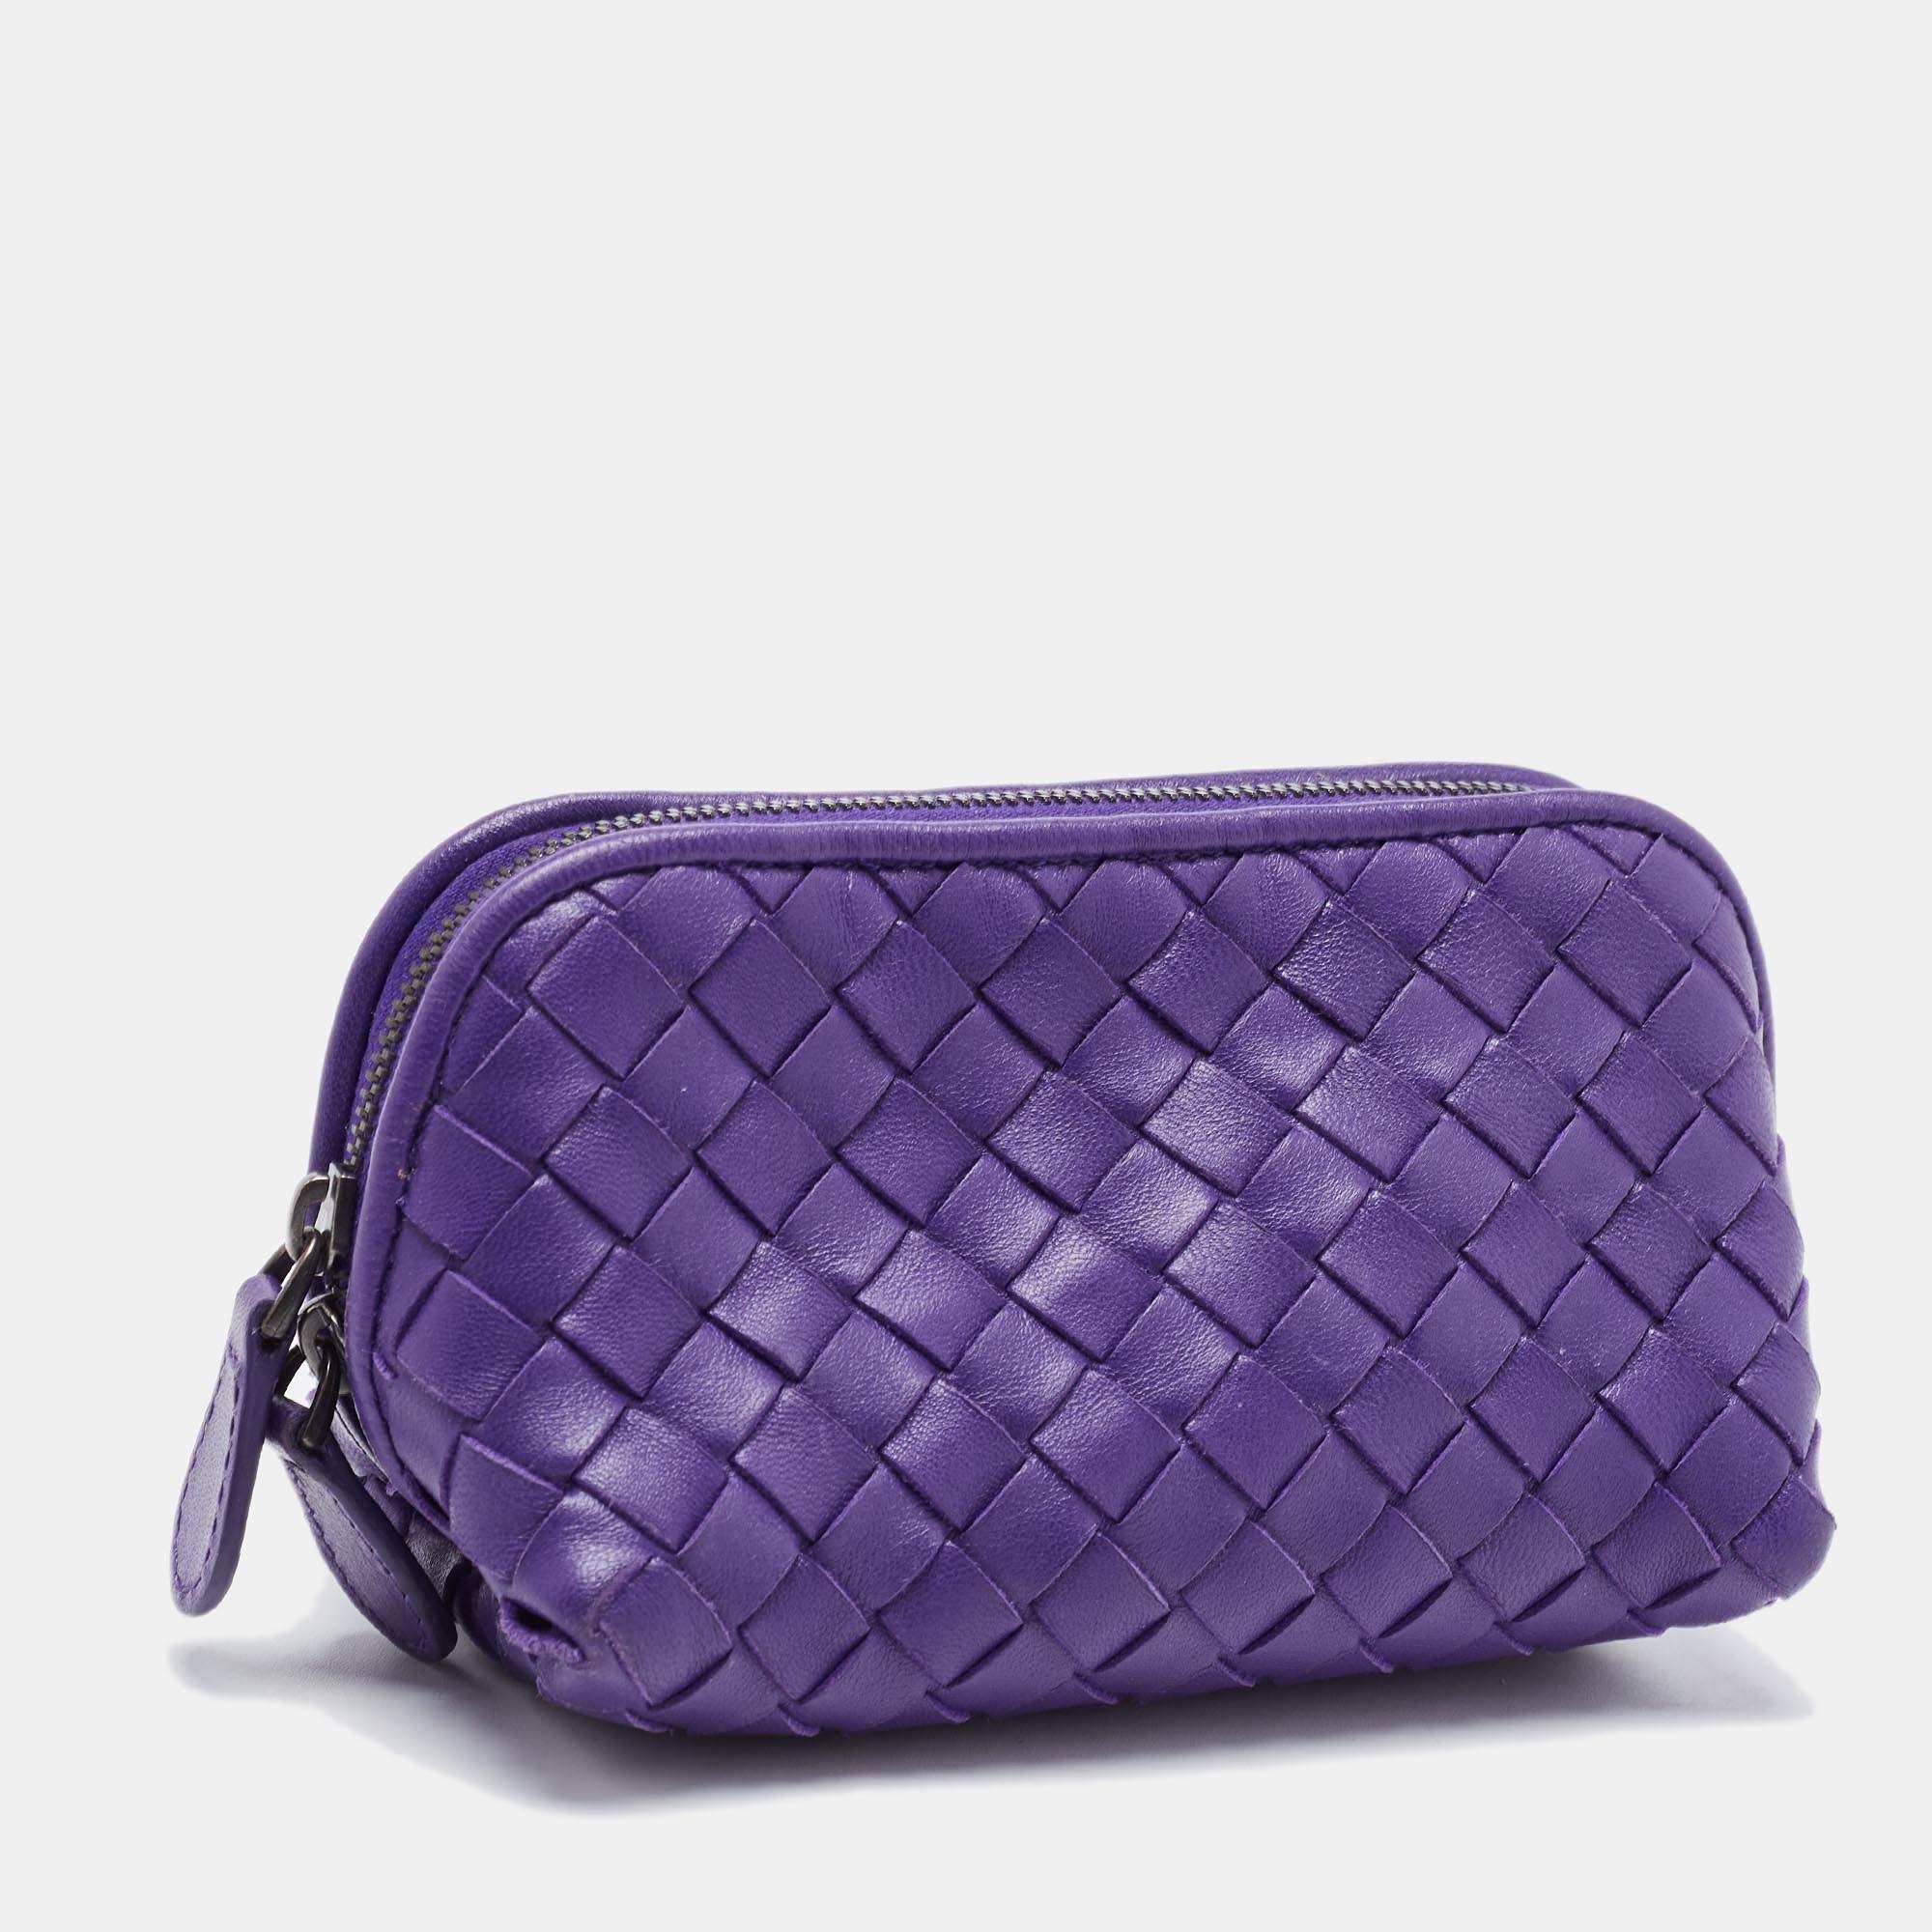 Bottega Veneta Purple Intrecciato Leather Zip Purse In Good Condition For Sale In Dubai, Al Qouz 2